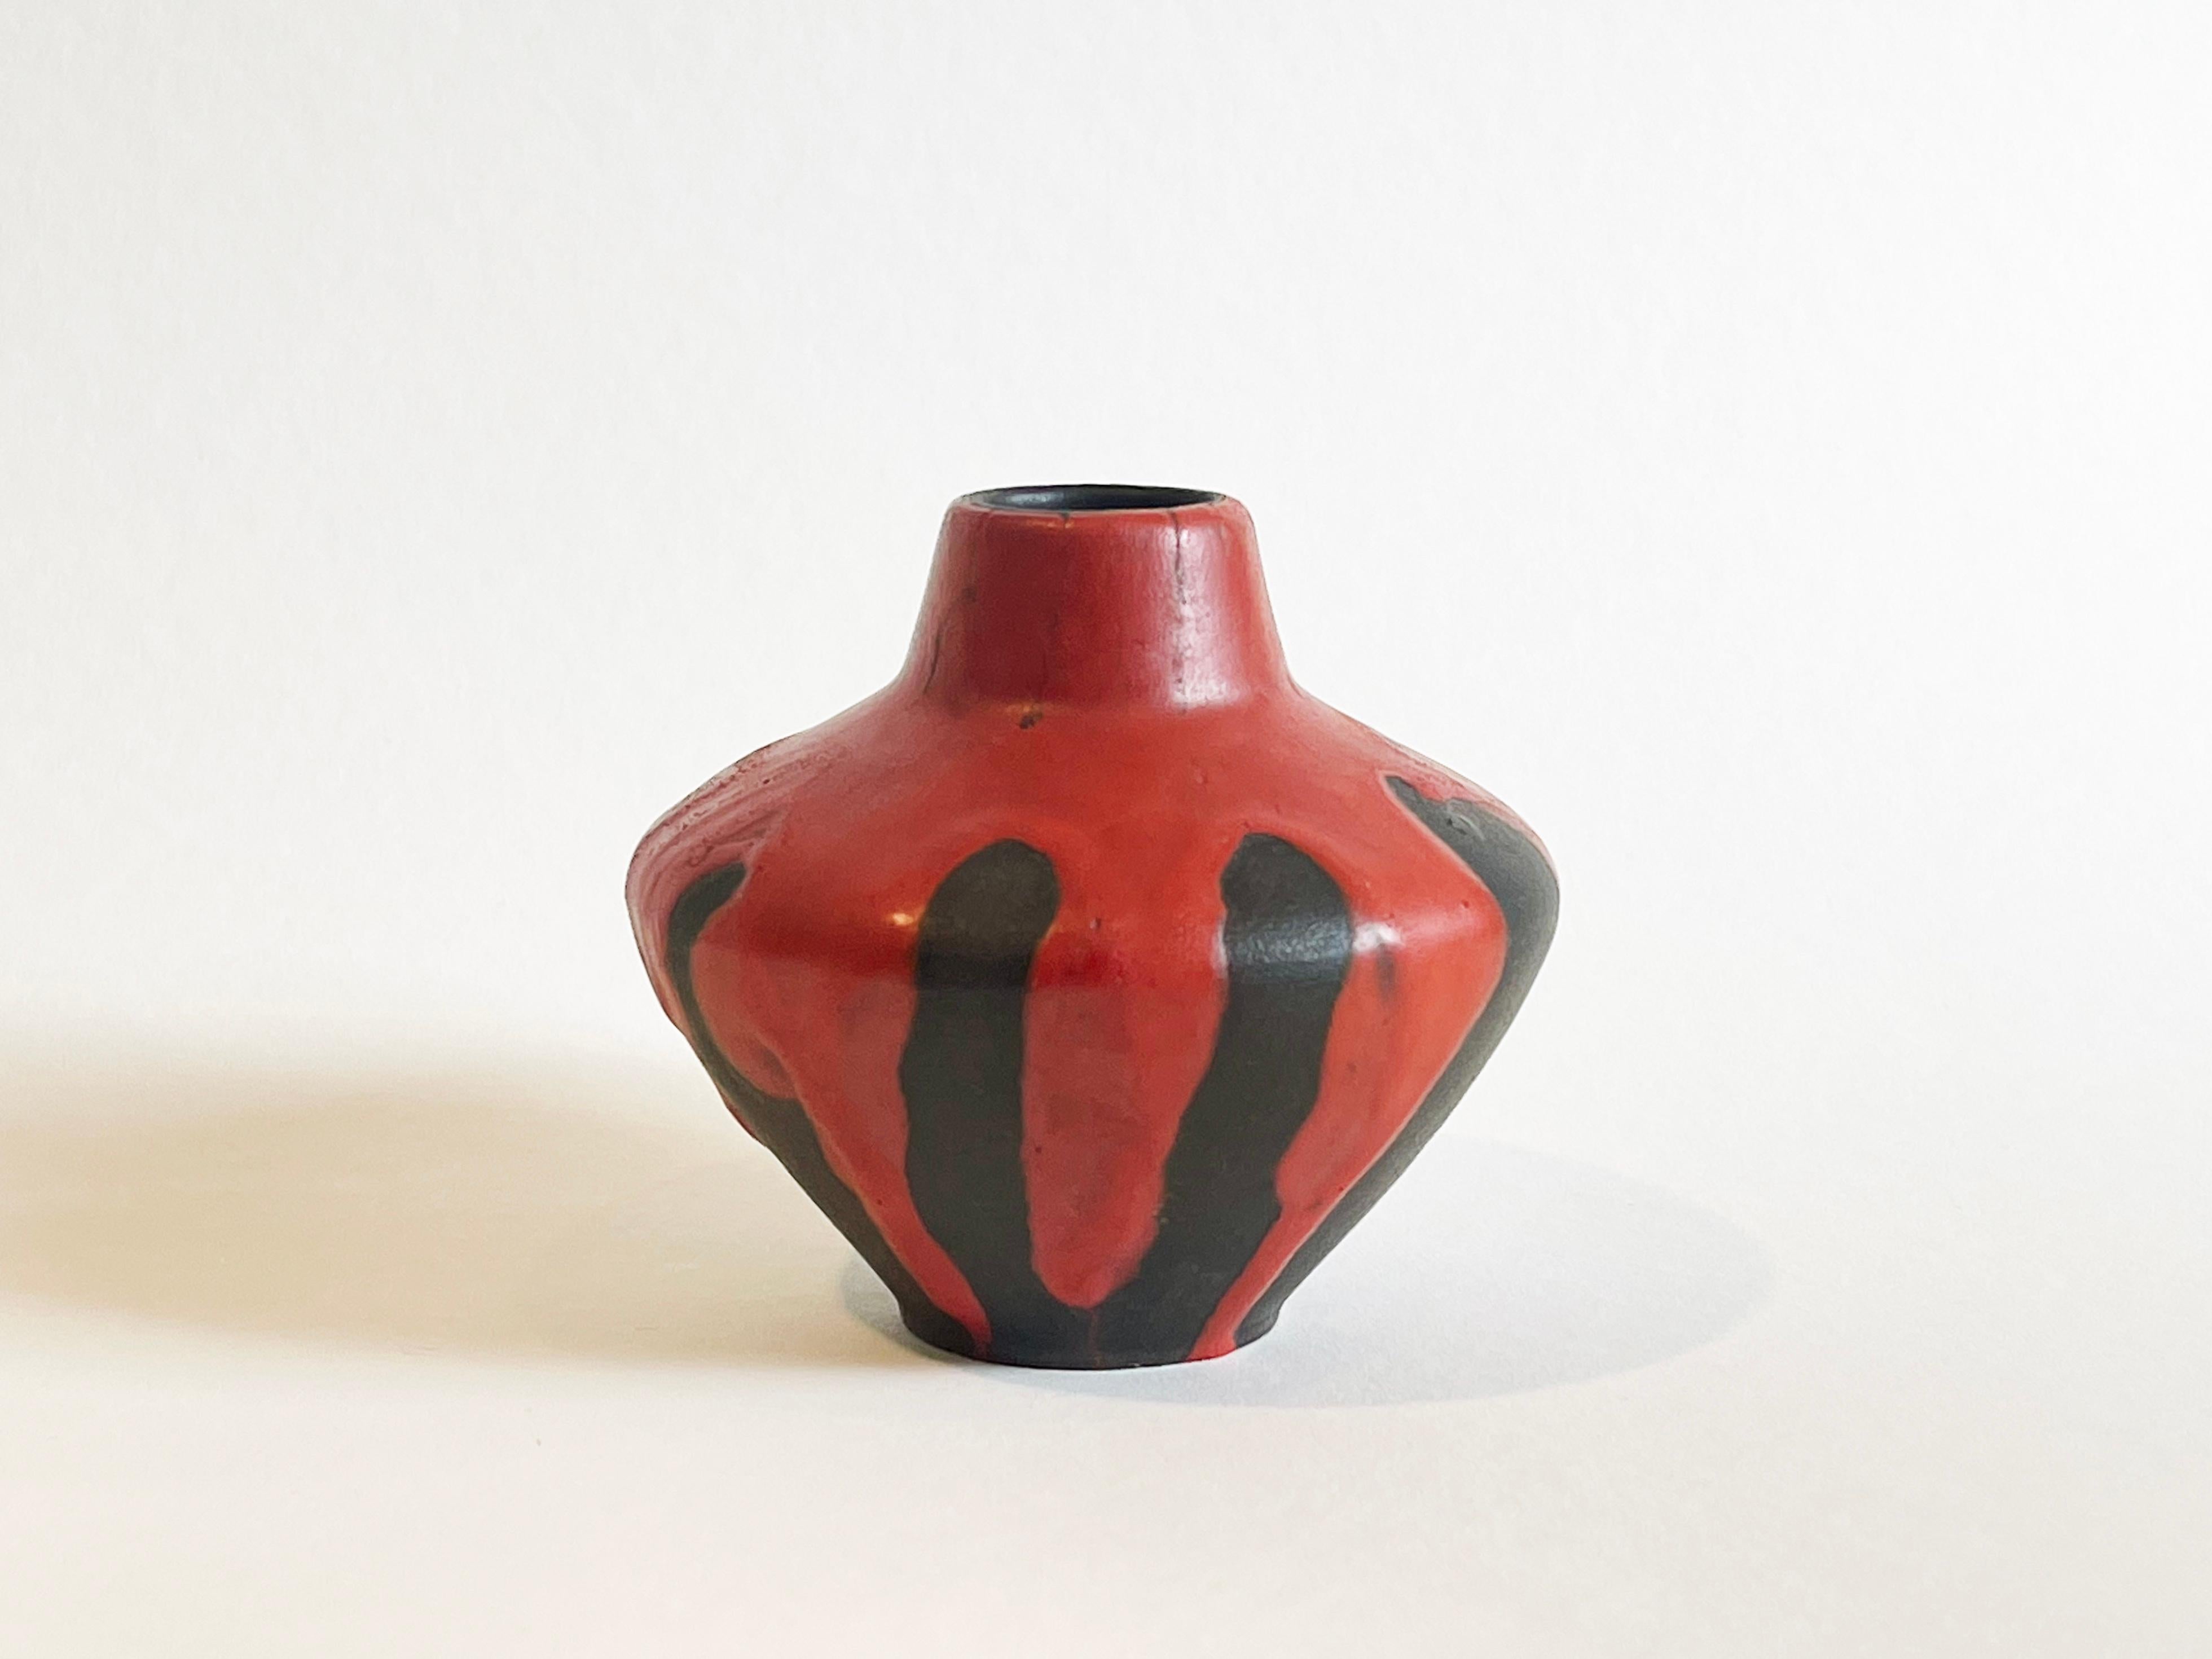 Vase original en céramique Fat Lava Mid Century Modern fait à la main.
Exécuté et conçu par Hans Welling pour Ceramano, Allemagne de l'Ouest, vers 1965.
Fat Lava glaze ''Stromboli'', nommé d'après le célèbre volcan italien en activité, dans une lave